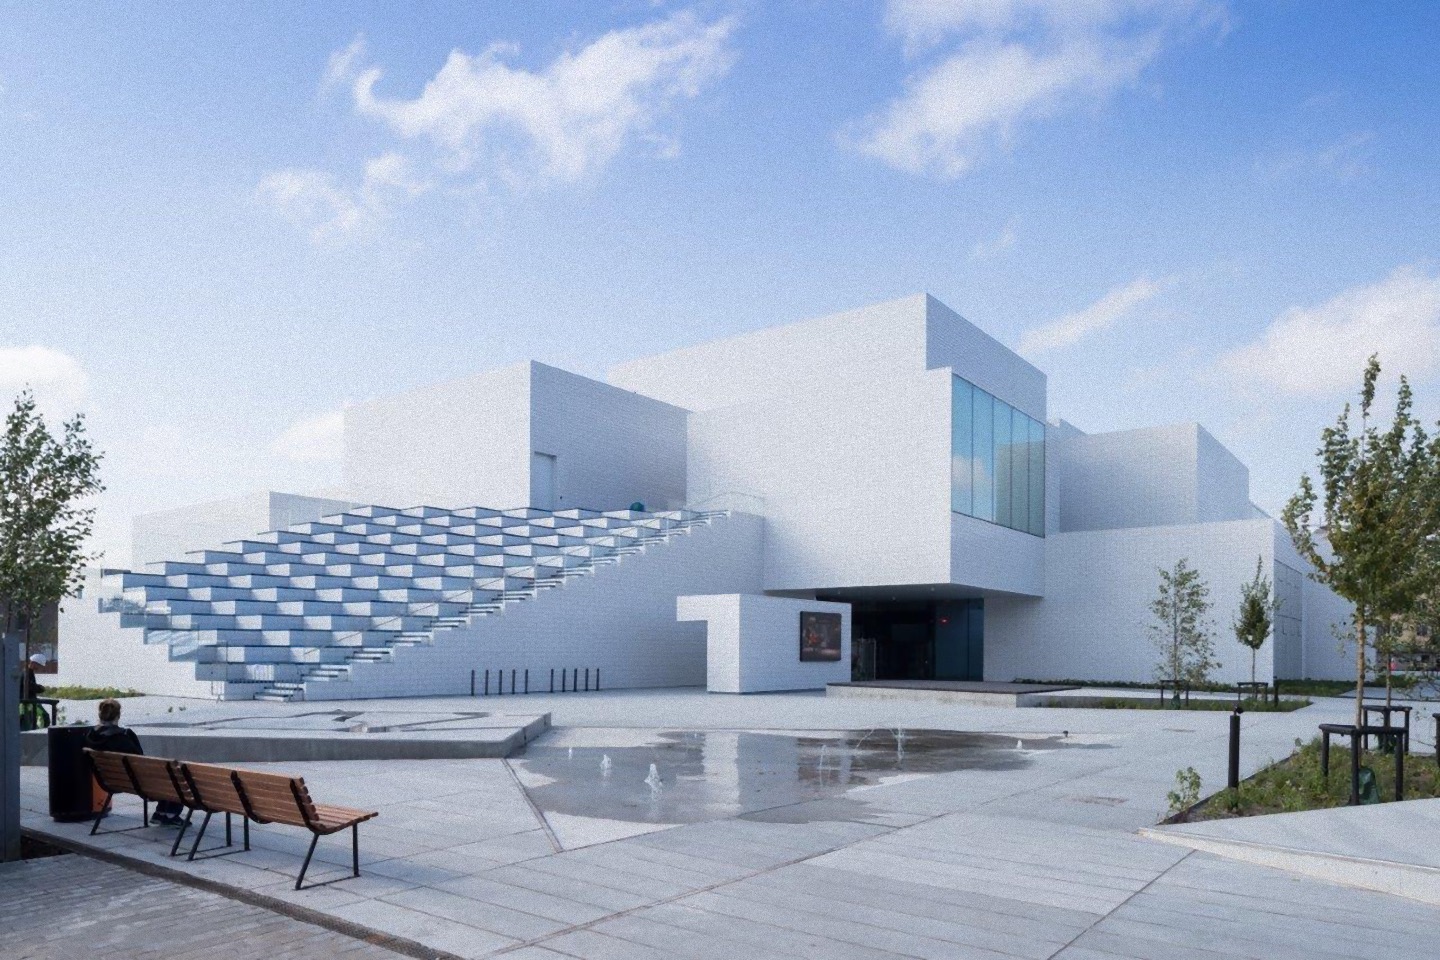 9月末デンマーク・ビルン市に完成した「レゴハウス」。 建築集団BIGによるミニチュアが実体化したかのような建築 | Webマガジン「AXIS